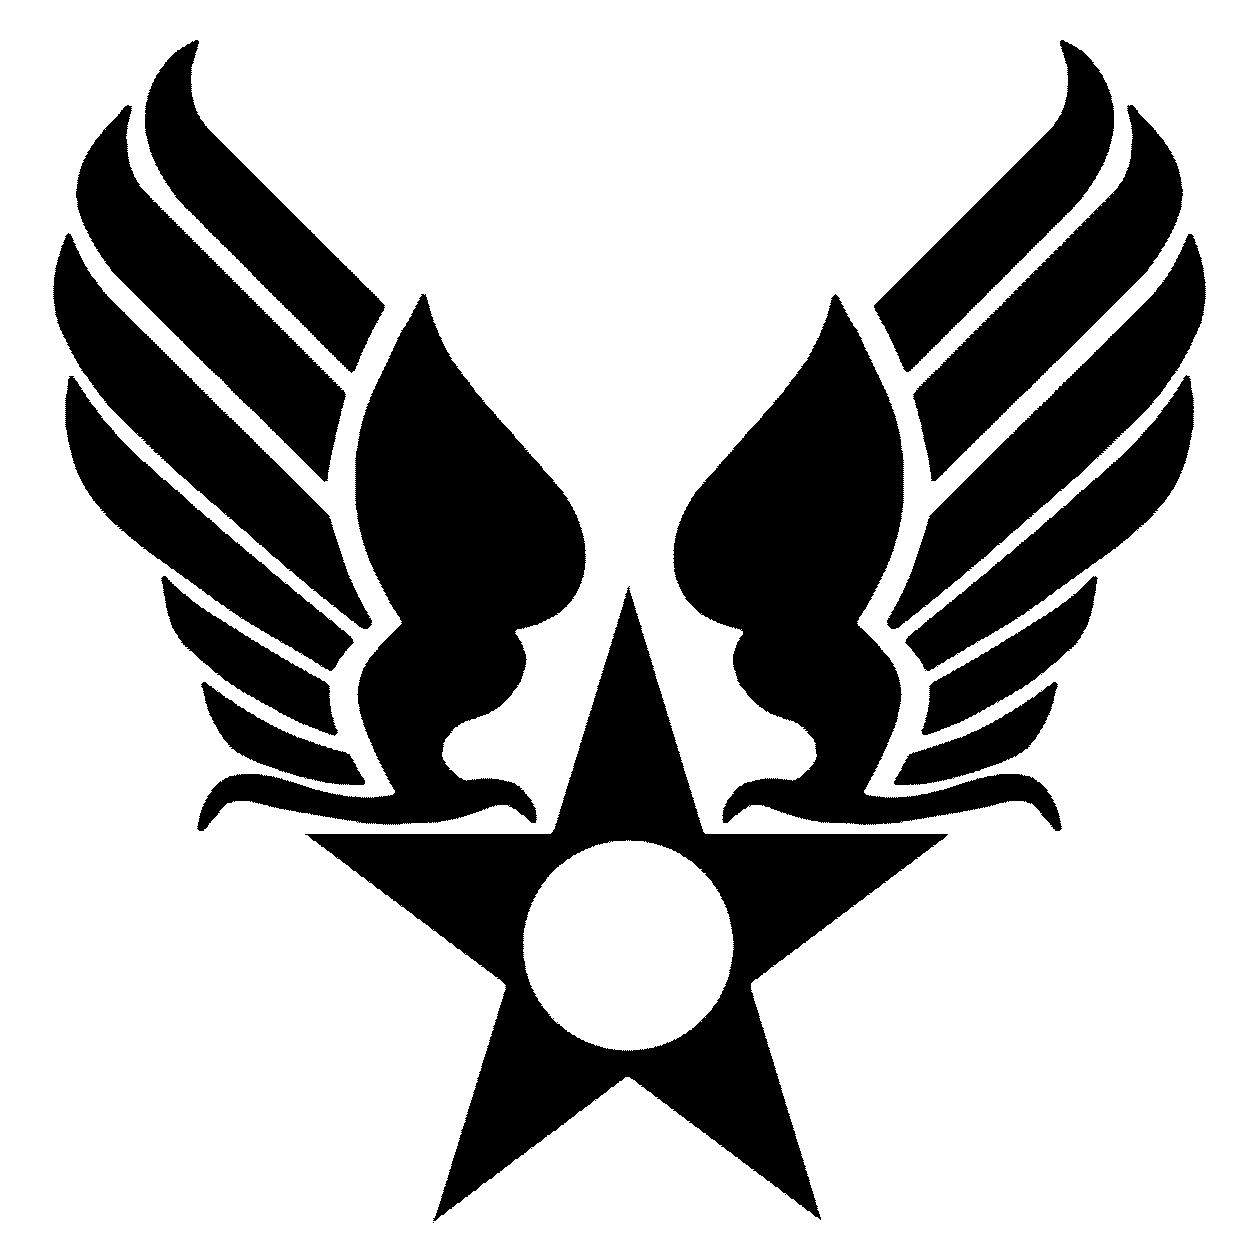 U.S. Army Air Force Logo - Army air corps Logos